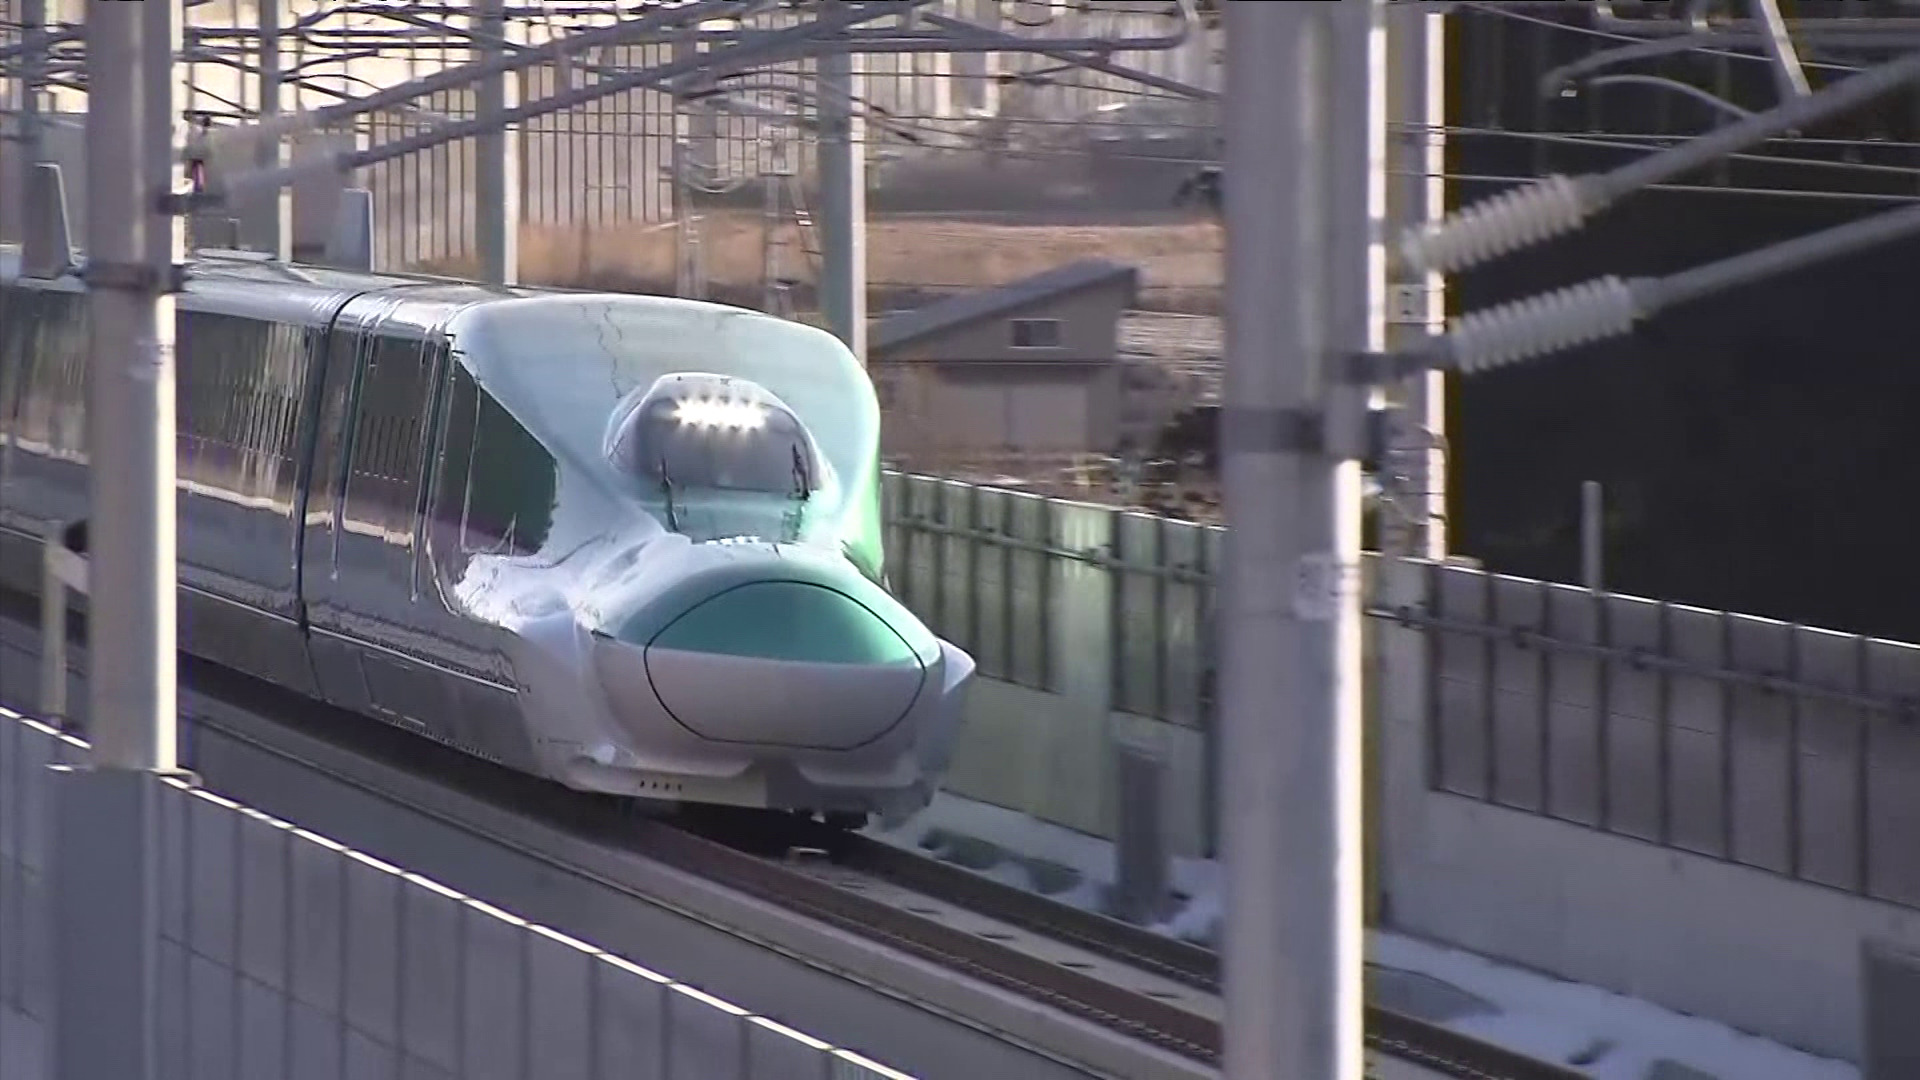 “北海道新幹線”の札幌駅延伸が“大幅延期” 街づくりへの影響を心配し憤る声…沿線の住民には温度差が 「本心はうれしい」という本音も